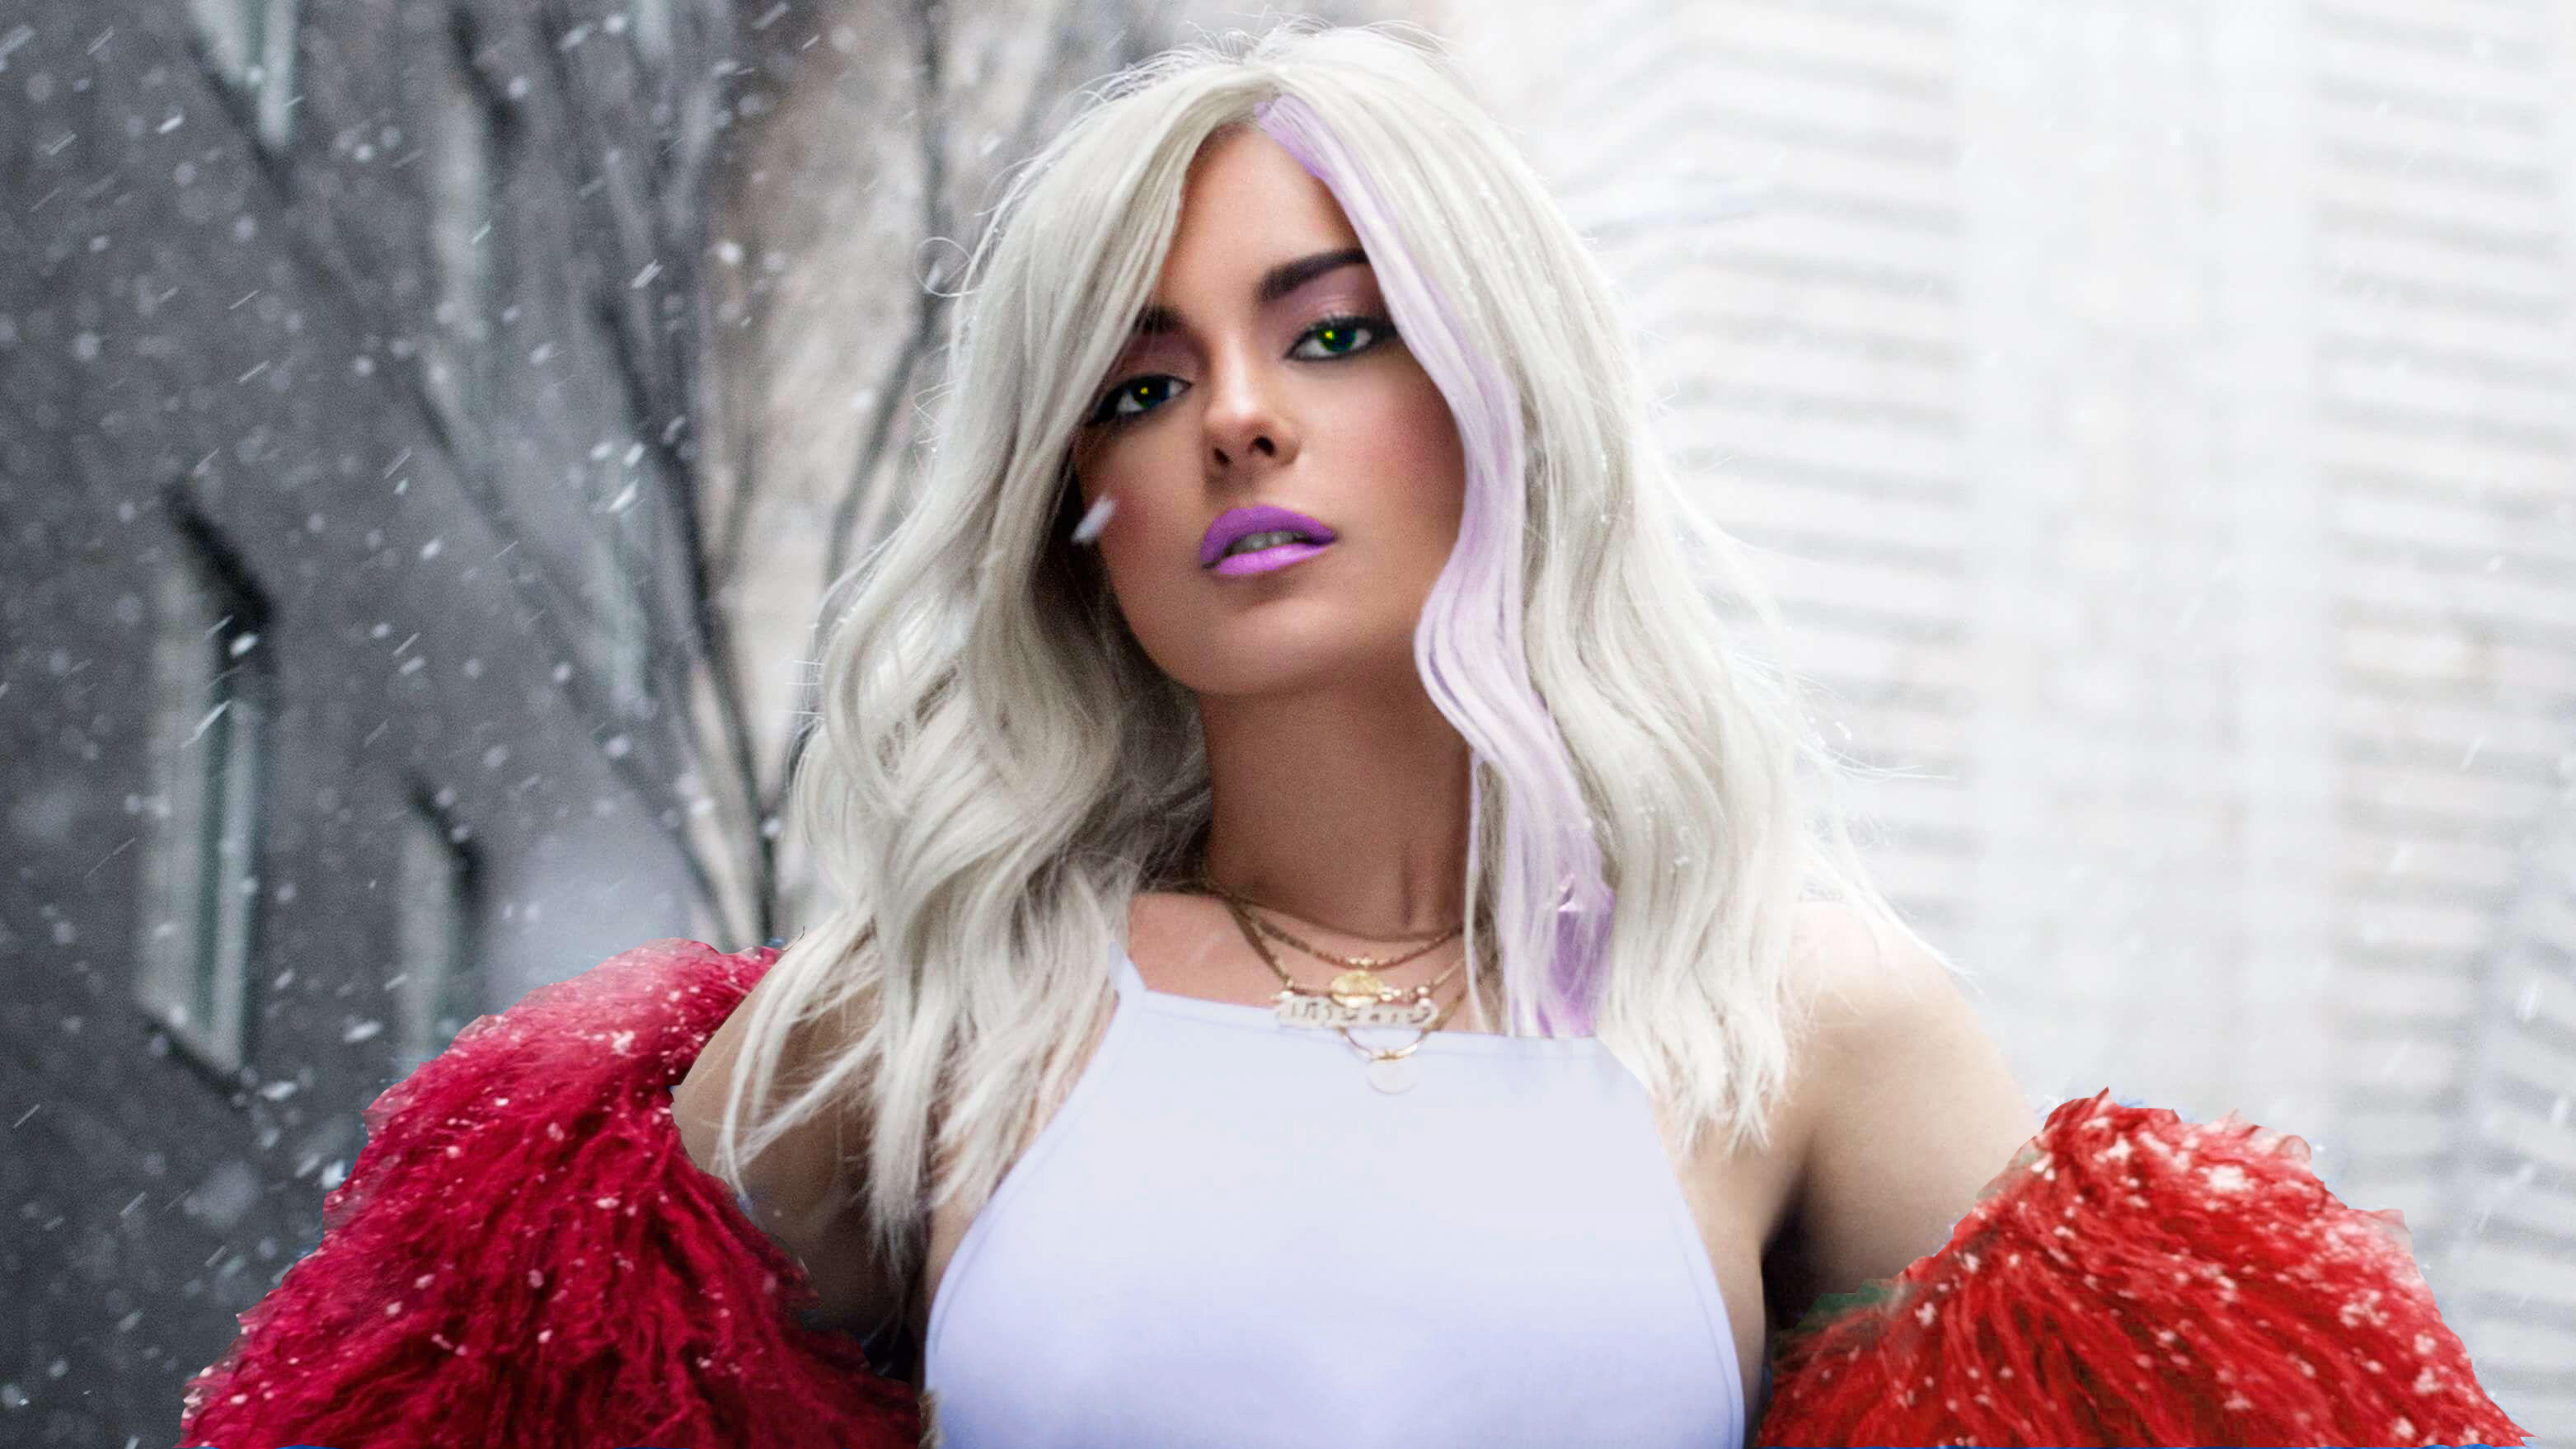 Bebe Rexha Green Eyes Lipstick Photoshop Singer White Hair Woman 3125x1758